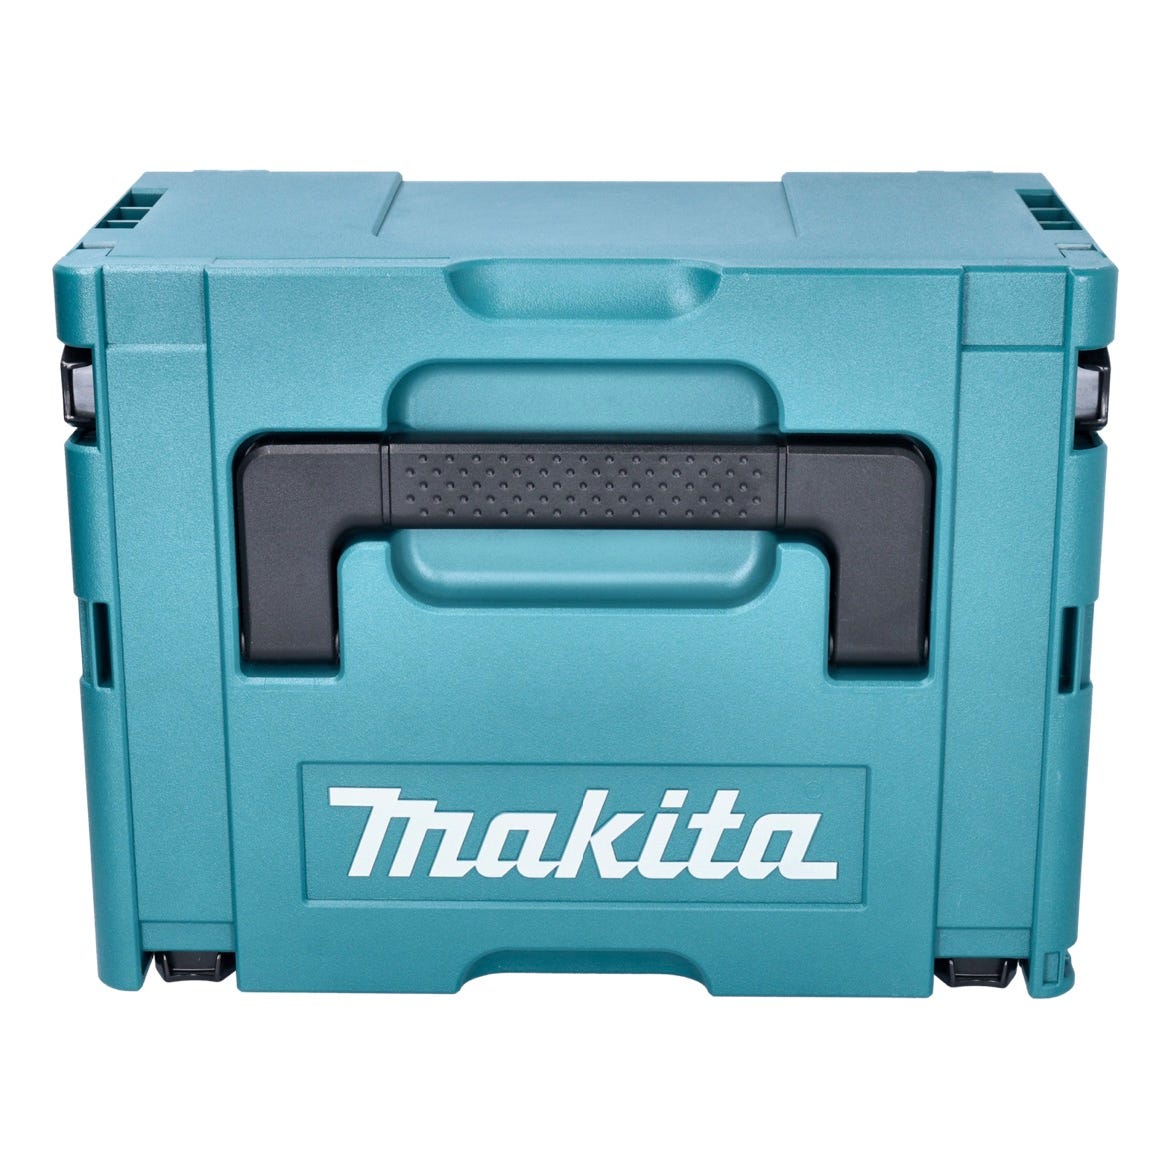 Makita DJV185RM1J Scie sauteuse sans fil 18V Brushless + 1x Batterie 4,0Ah + Chargeur + Coffret Makpac 2